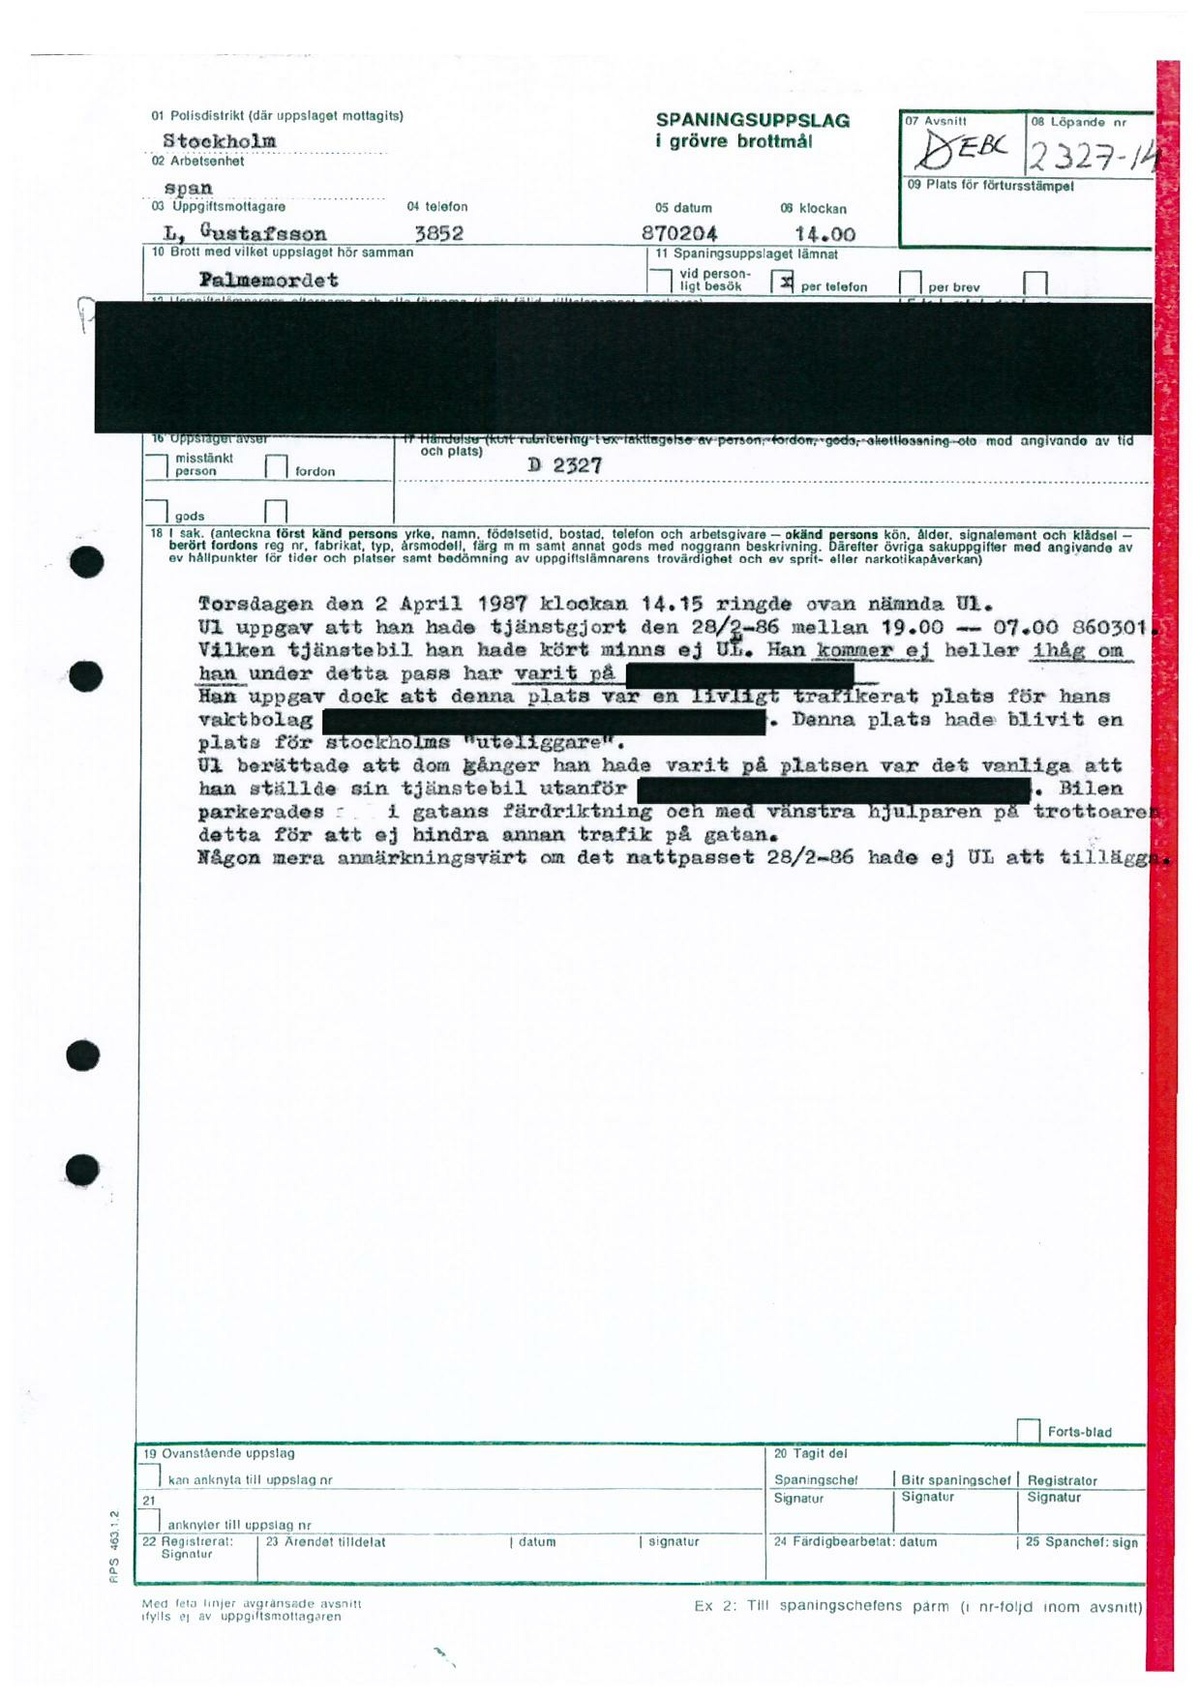 Pol-1987-02-04 1400 I2327-14 Polisbil-kommunikationsradio-utanför-bostaden.pdf